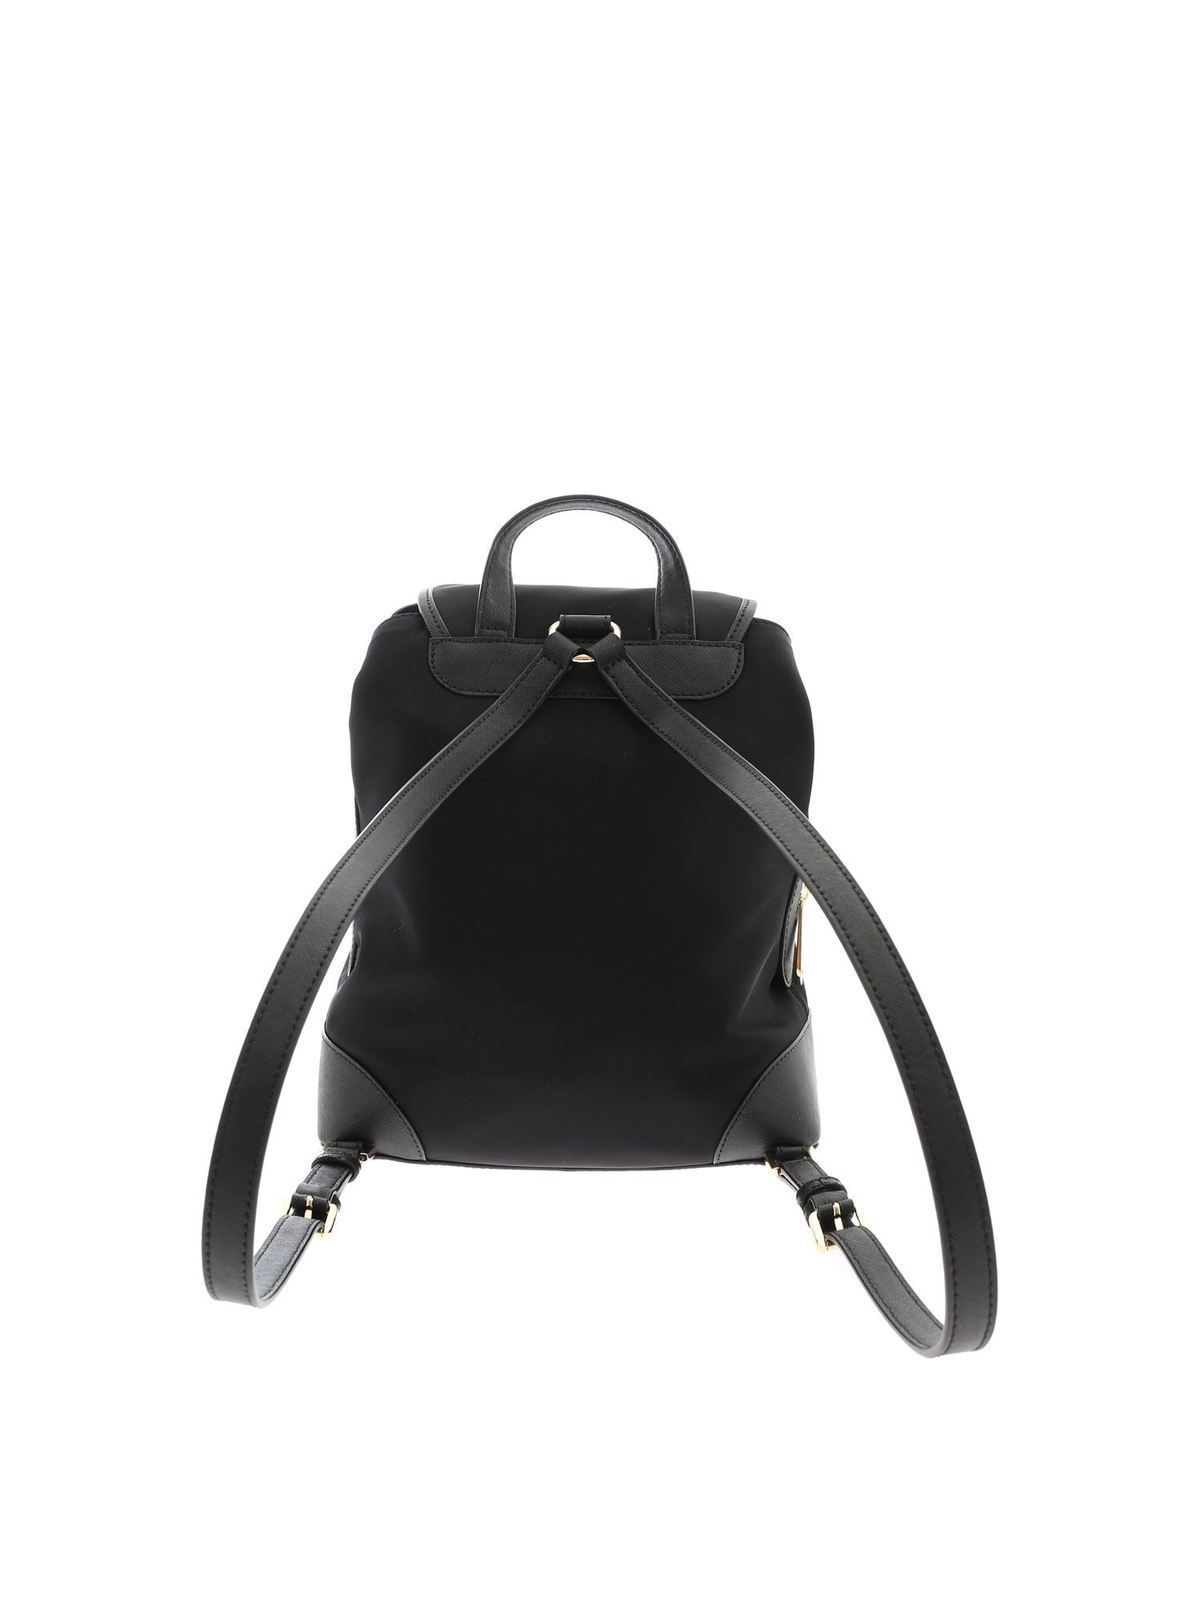 Michael Kors Raven Medium Black White Leather Backpack